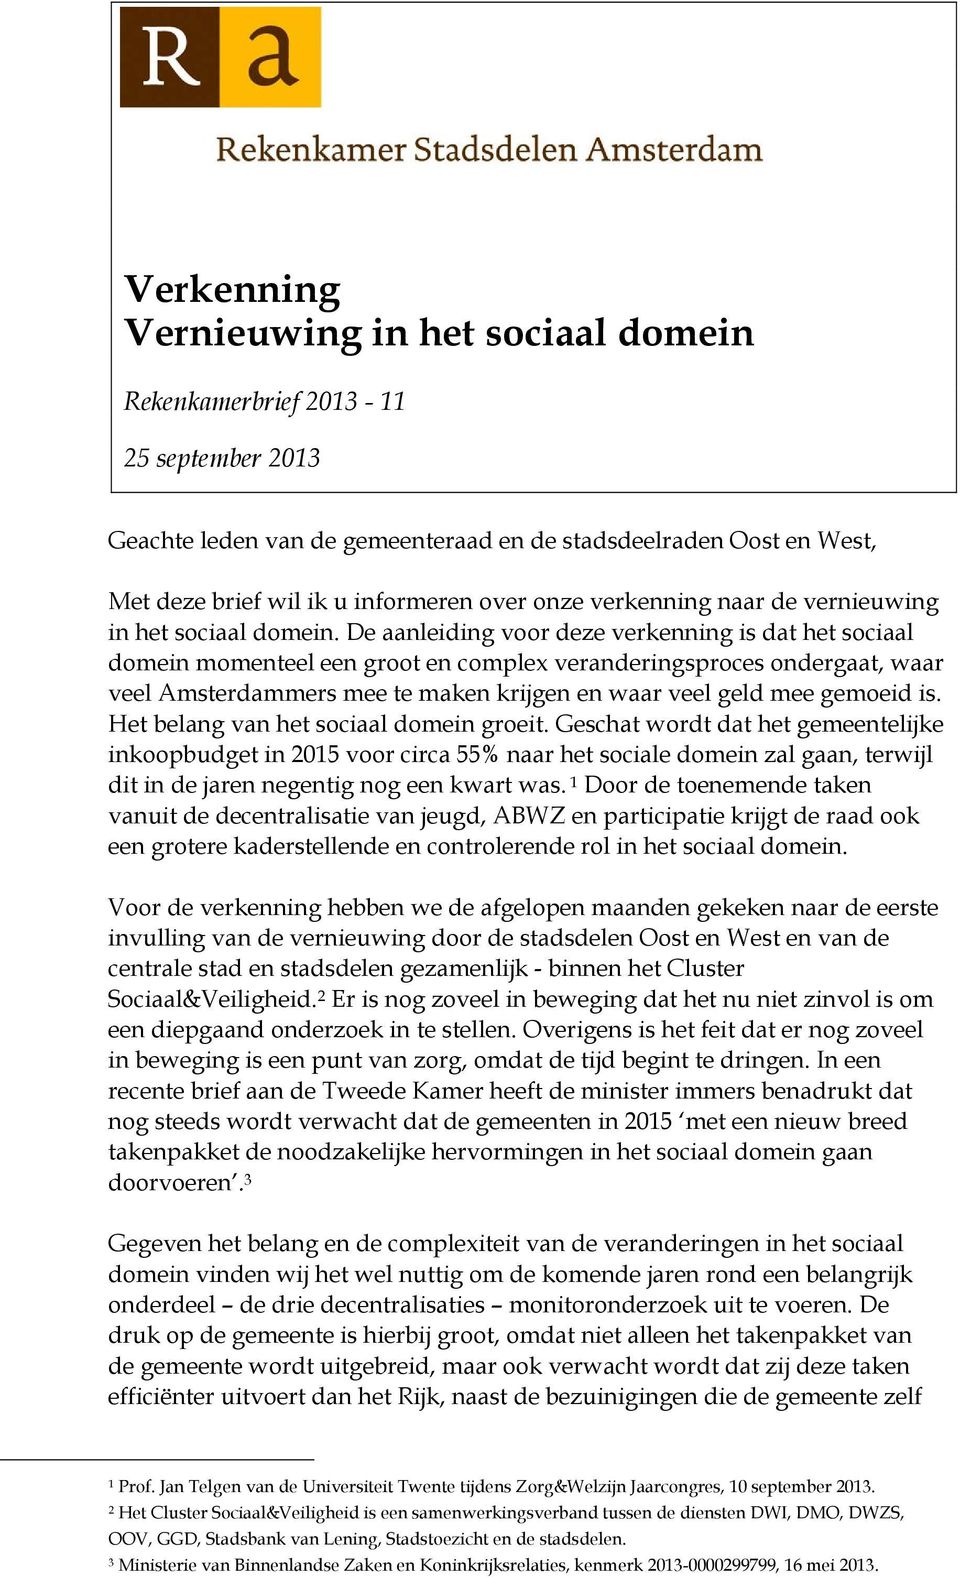 De aanleiding voor deze verkenning is dat het sociaal domein momenteel een groot en complex veranderingsproces ondergaat, waar veel Amsterdammers mee te maken krijgen en waar veel geld mee gemoeid is.